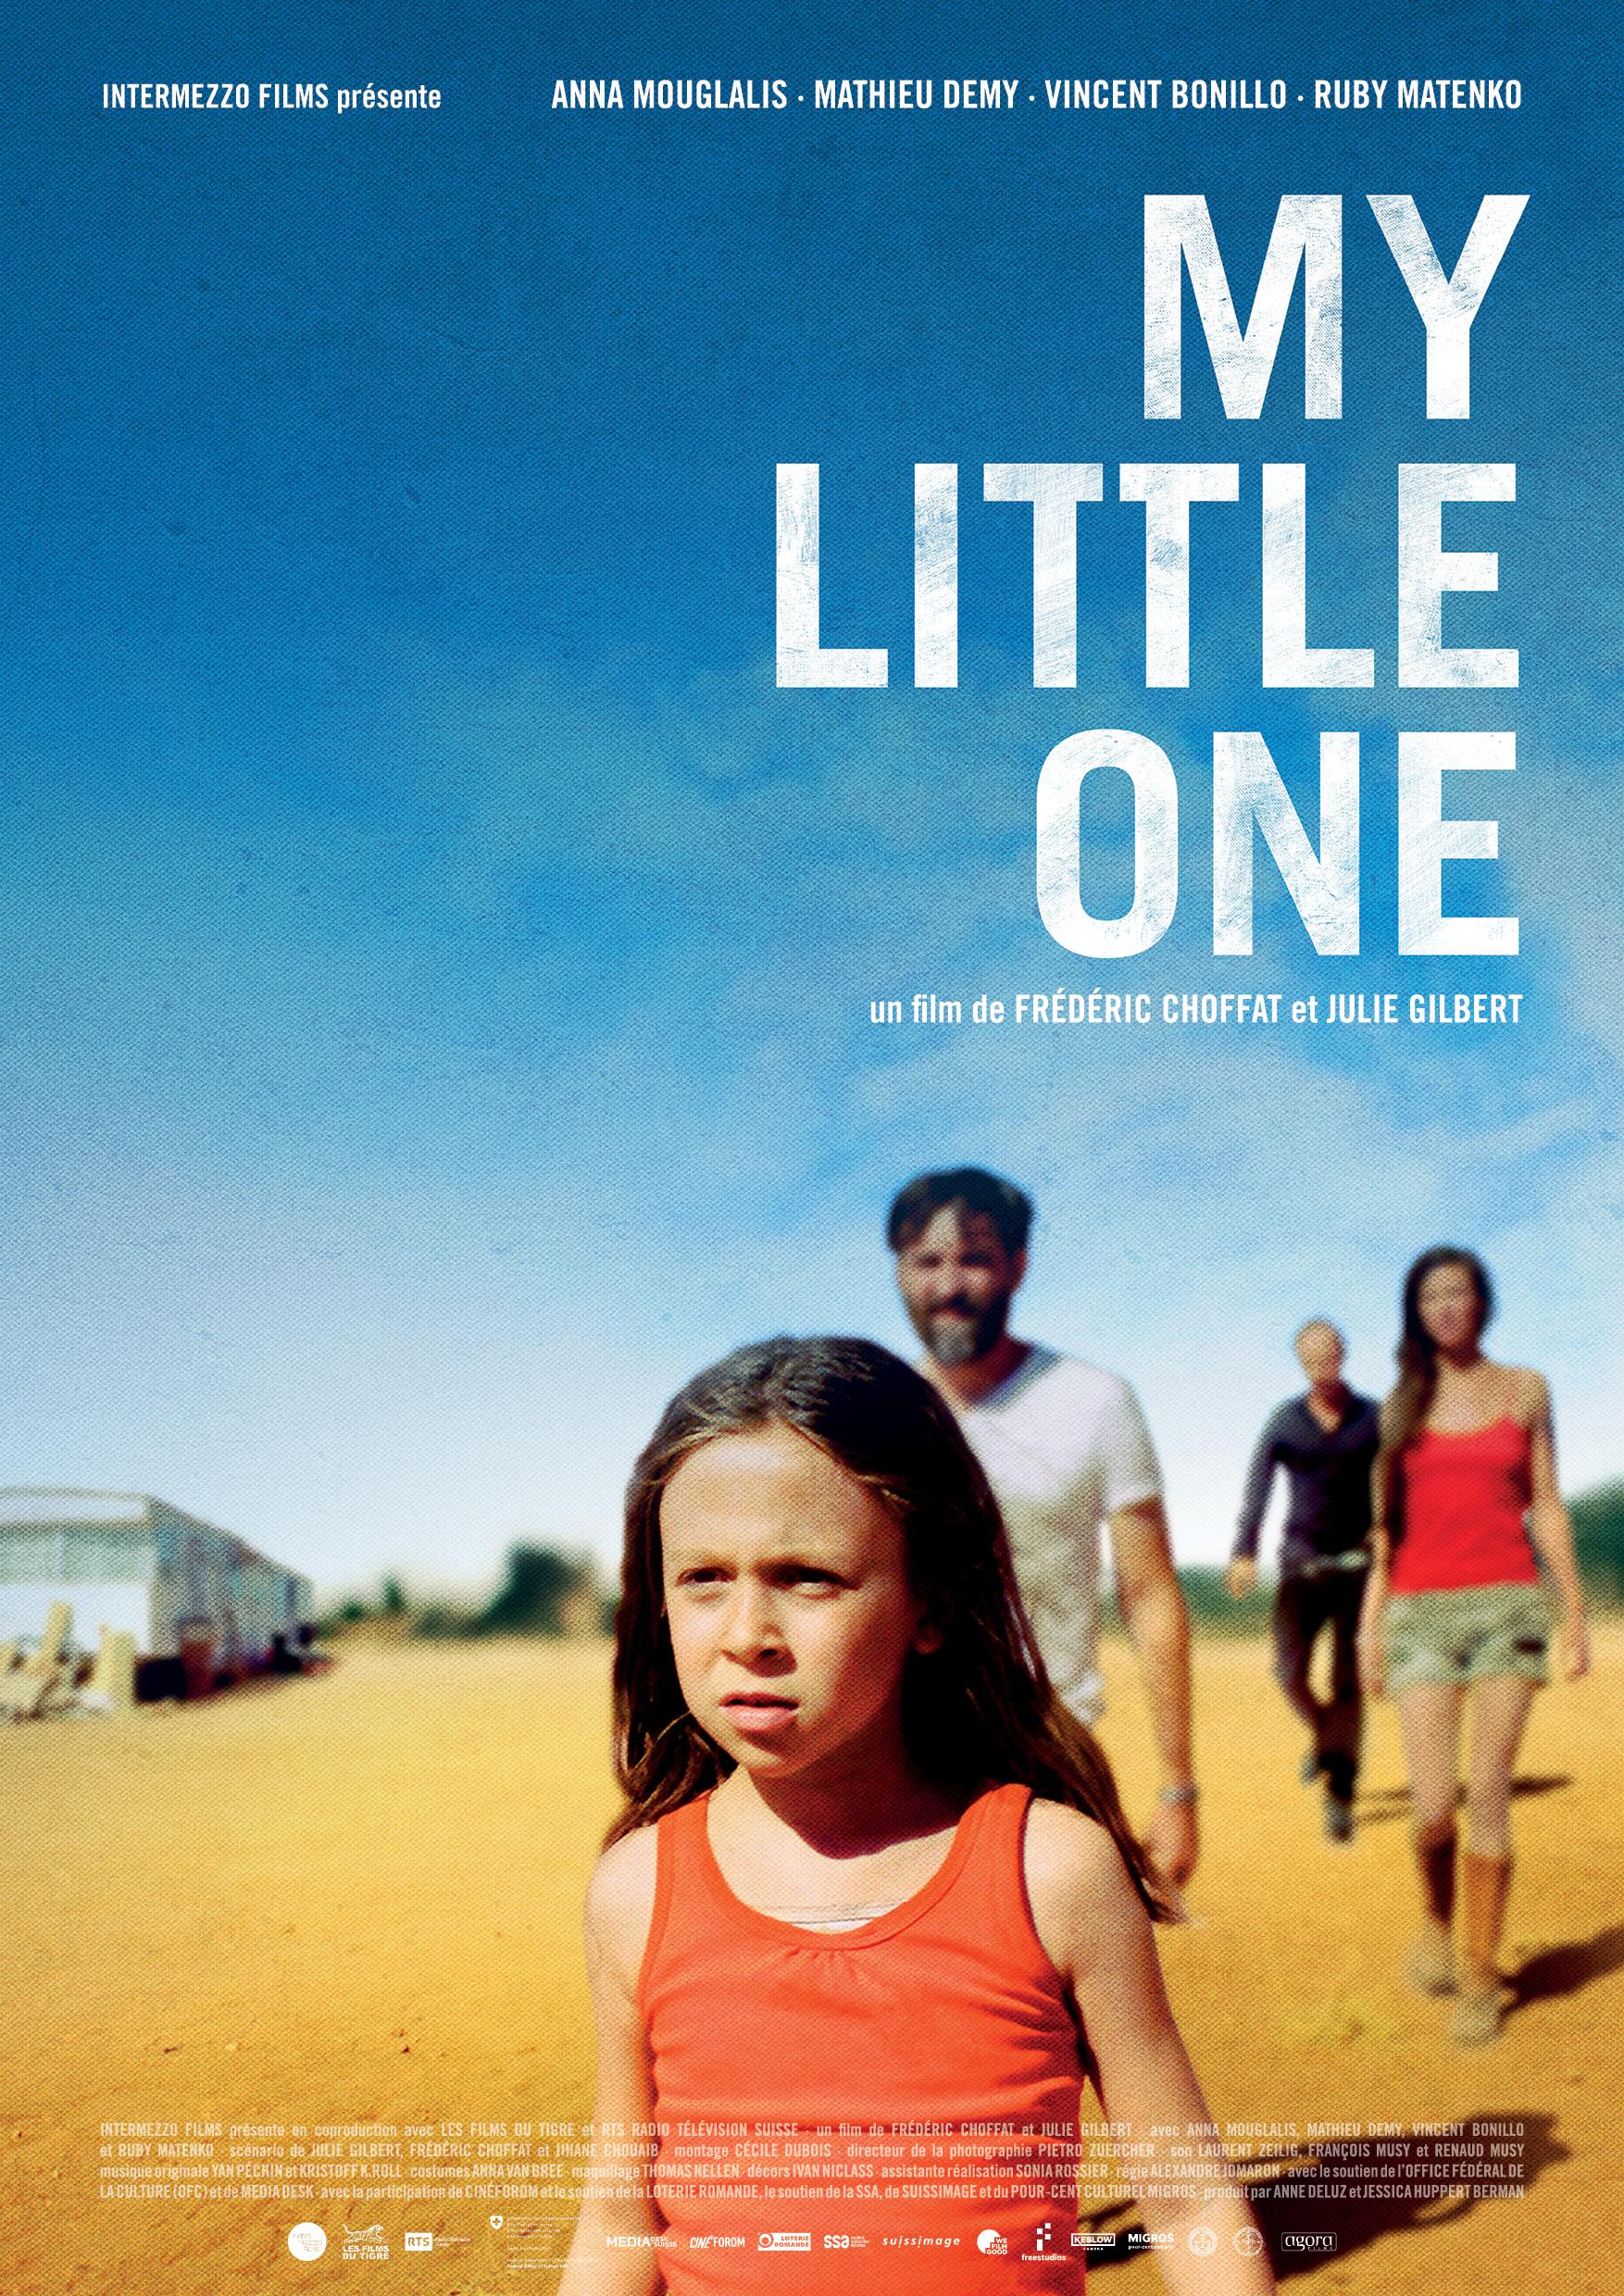 L'affiche du film "My little one", de Frédéric Choffat et Julie Gilbert. [RTS - Intermezzo]